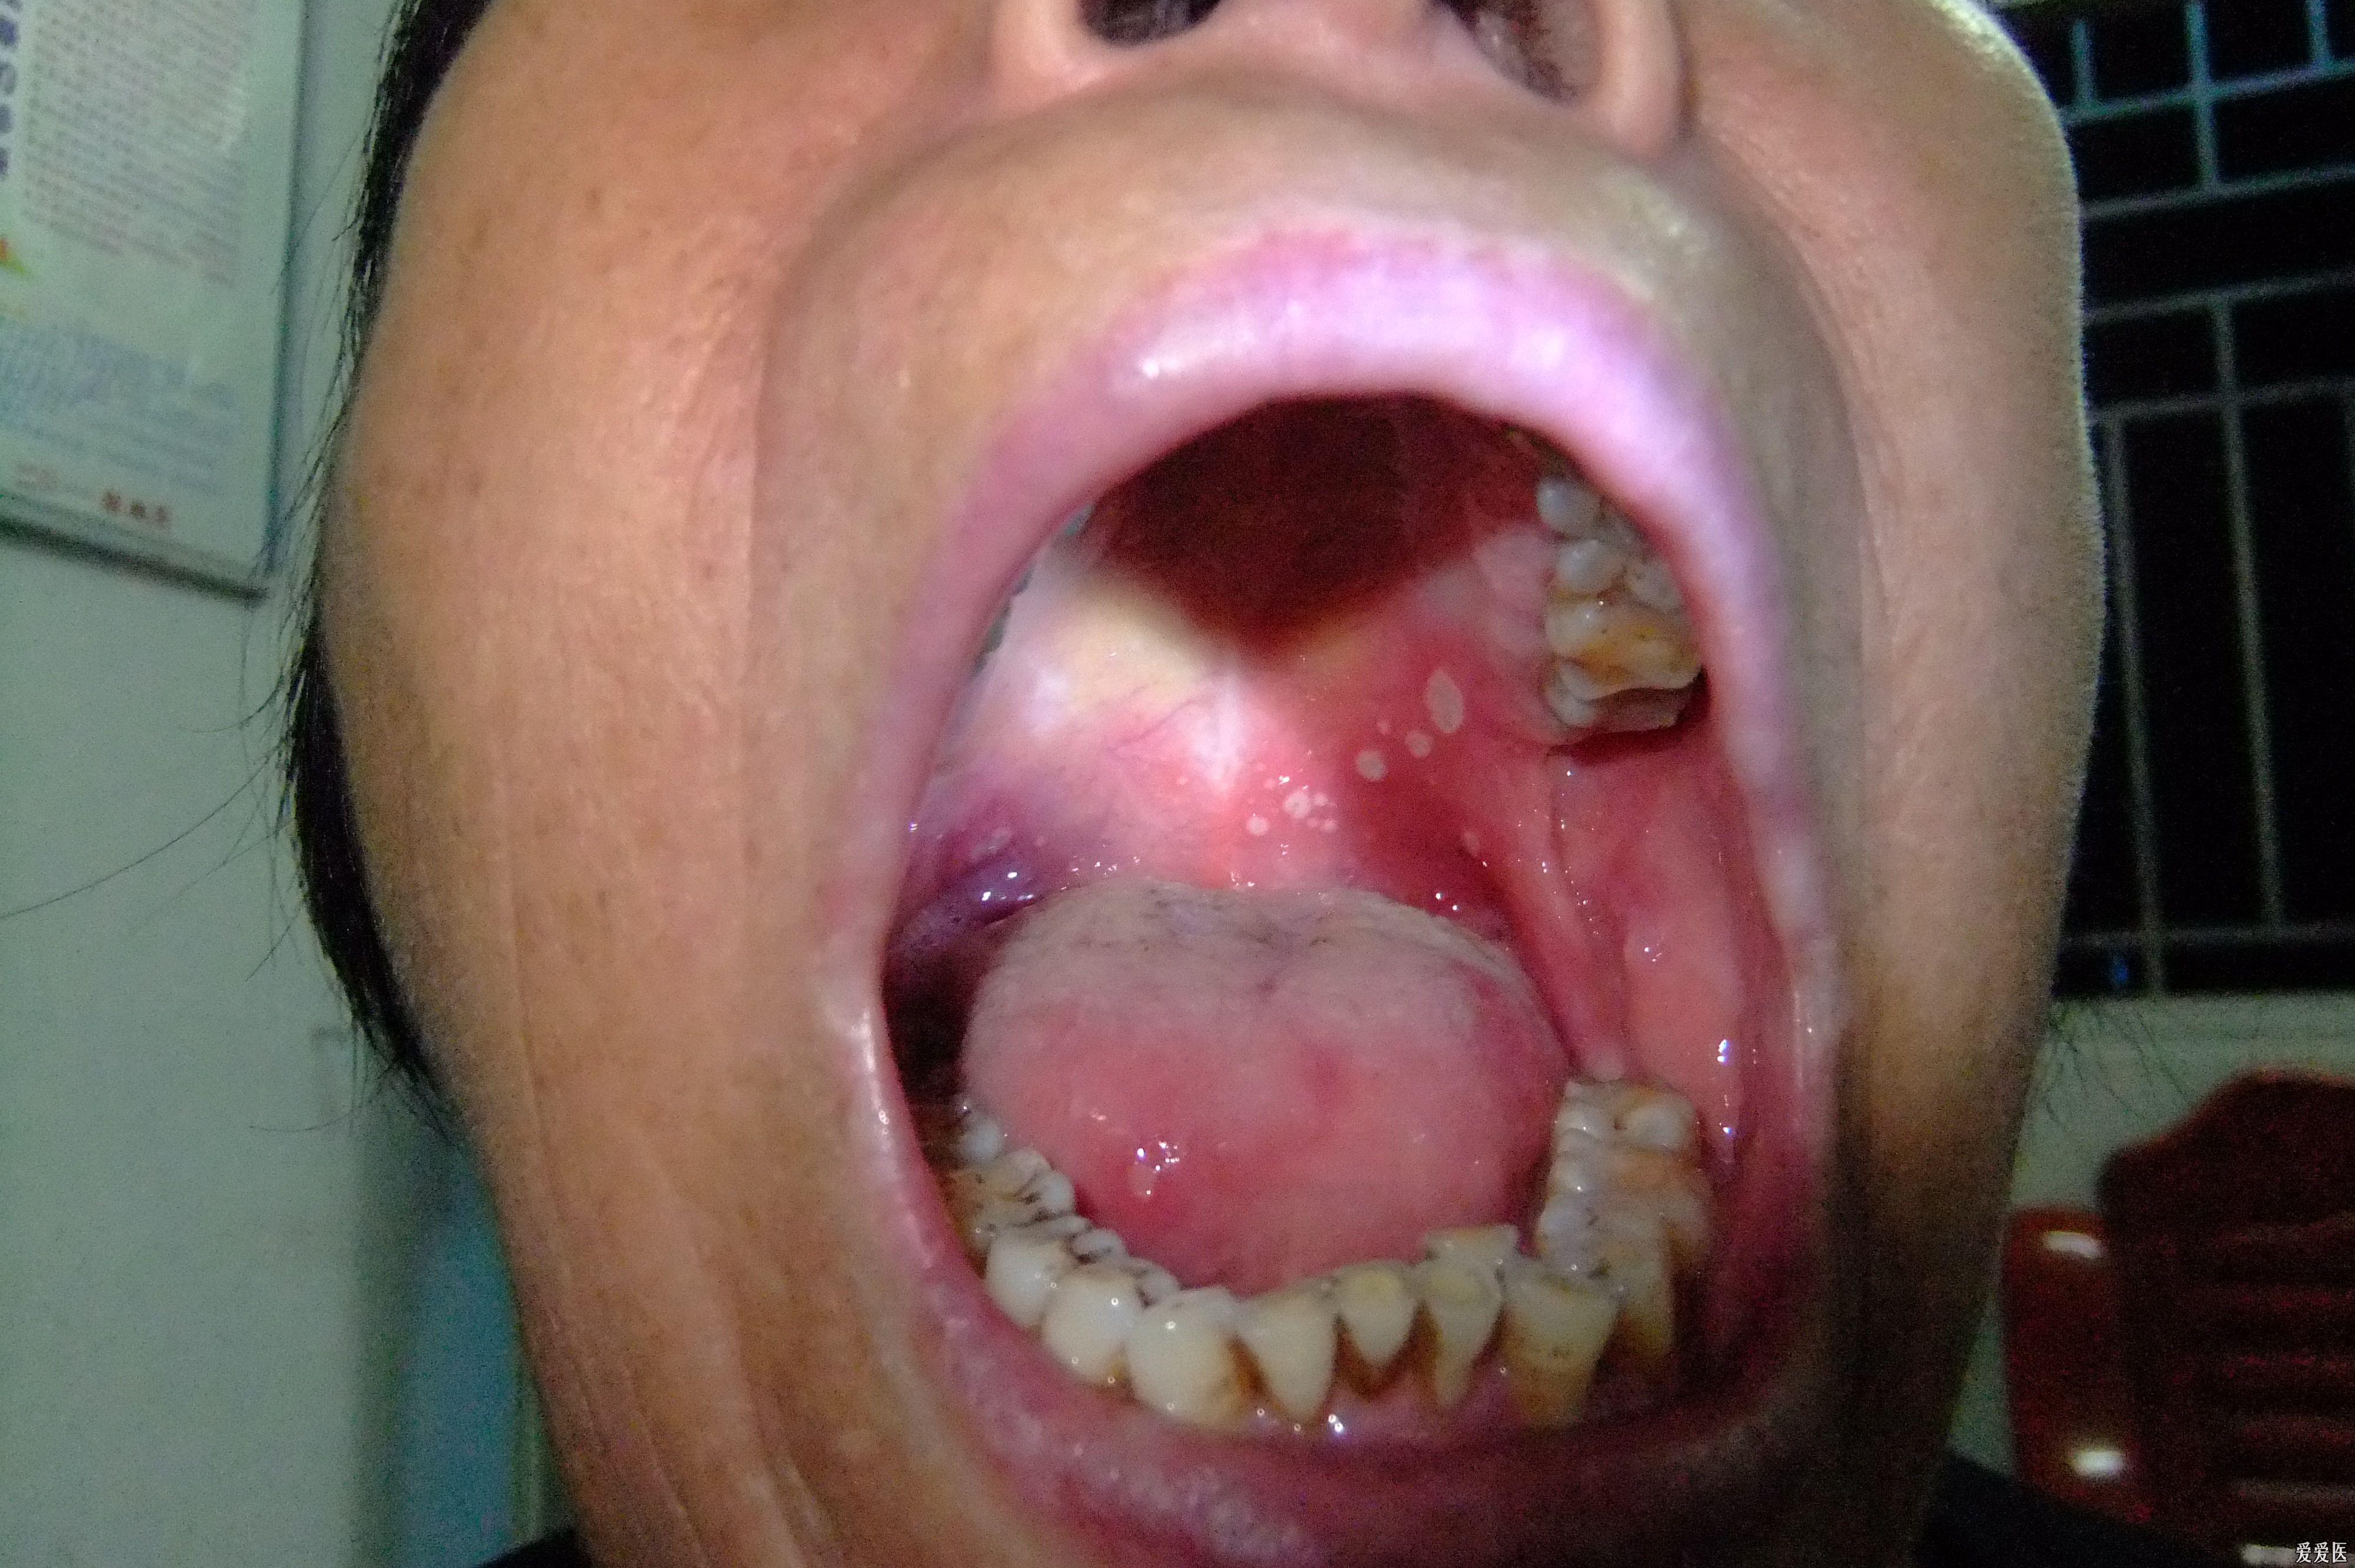 溃疡口腔的照片图片